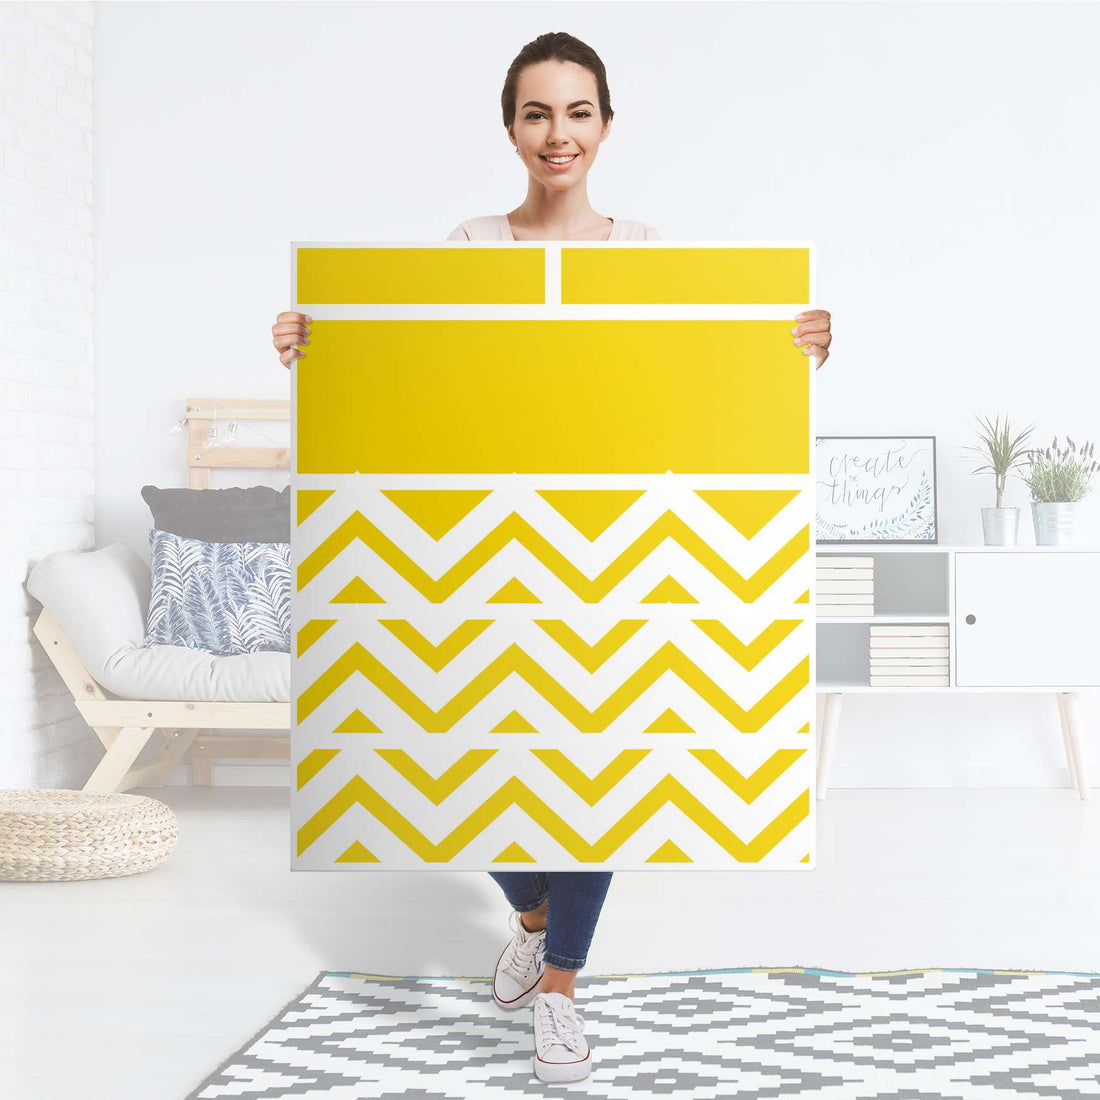 Klebefolie Gelbe Zacken  - IKEA Hemnes Kommode 6 Schubladen - Folie